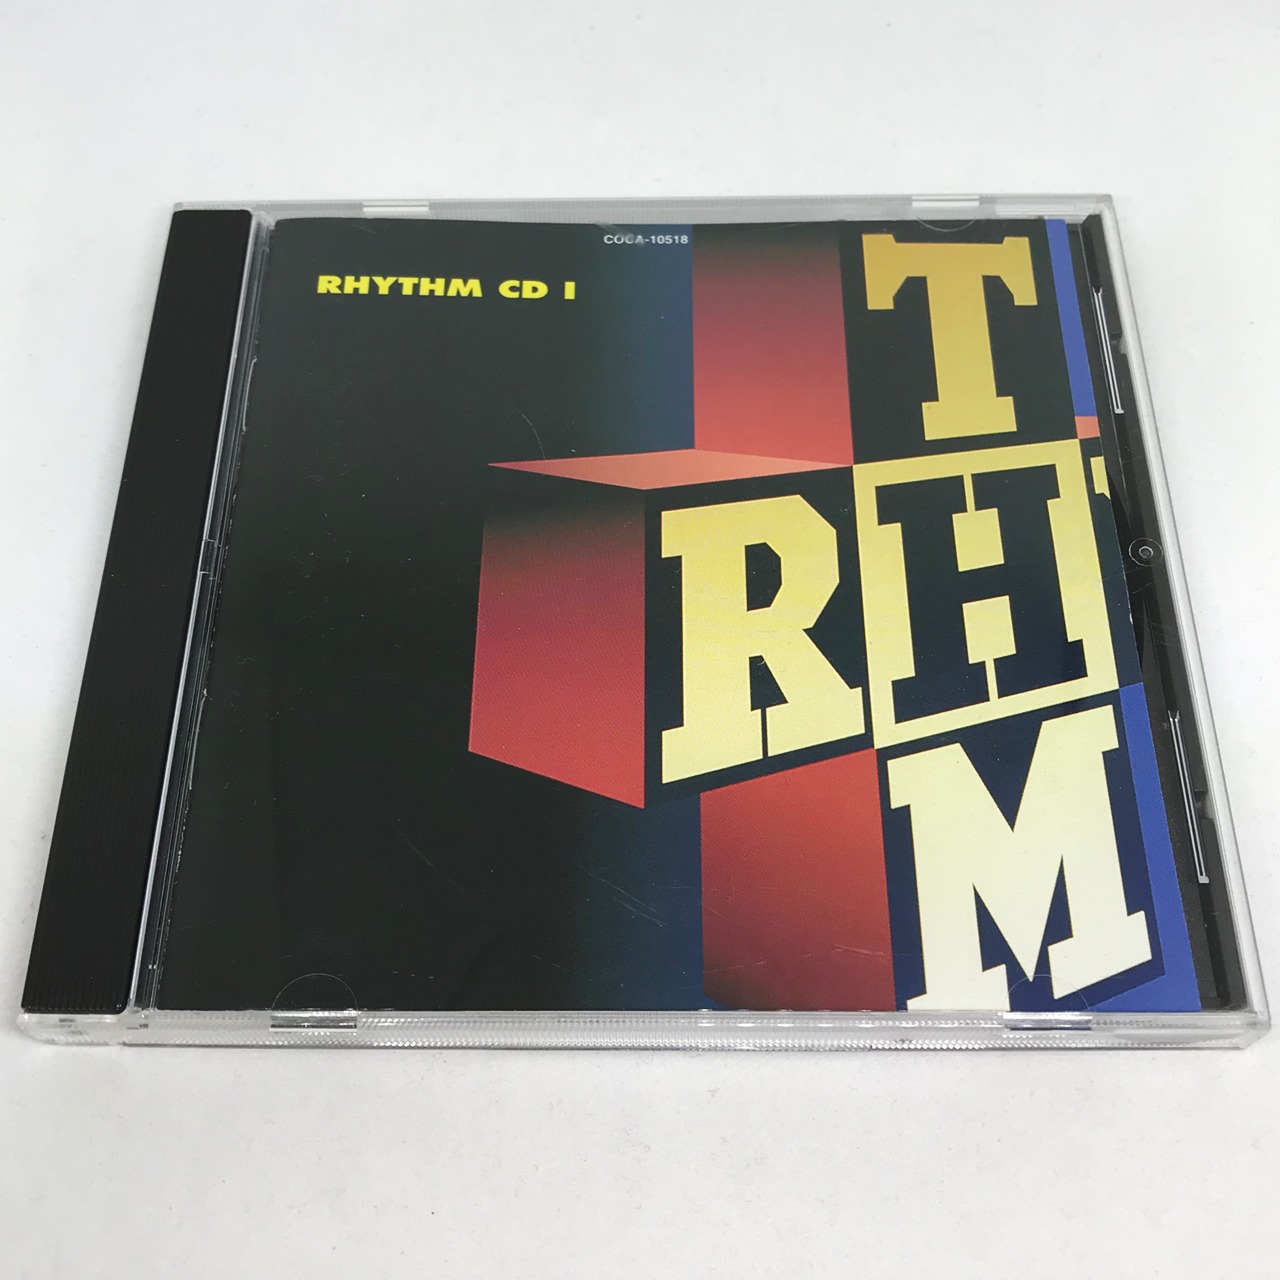 RHYTHM CD 1